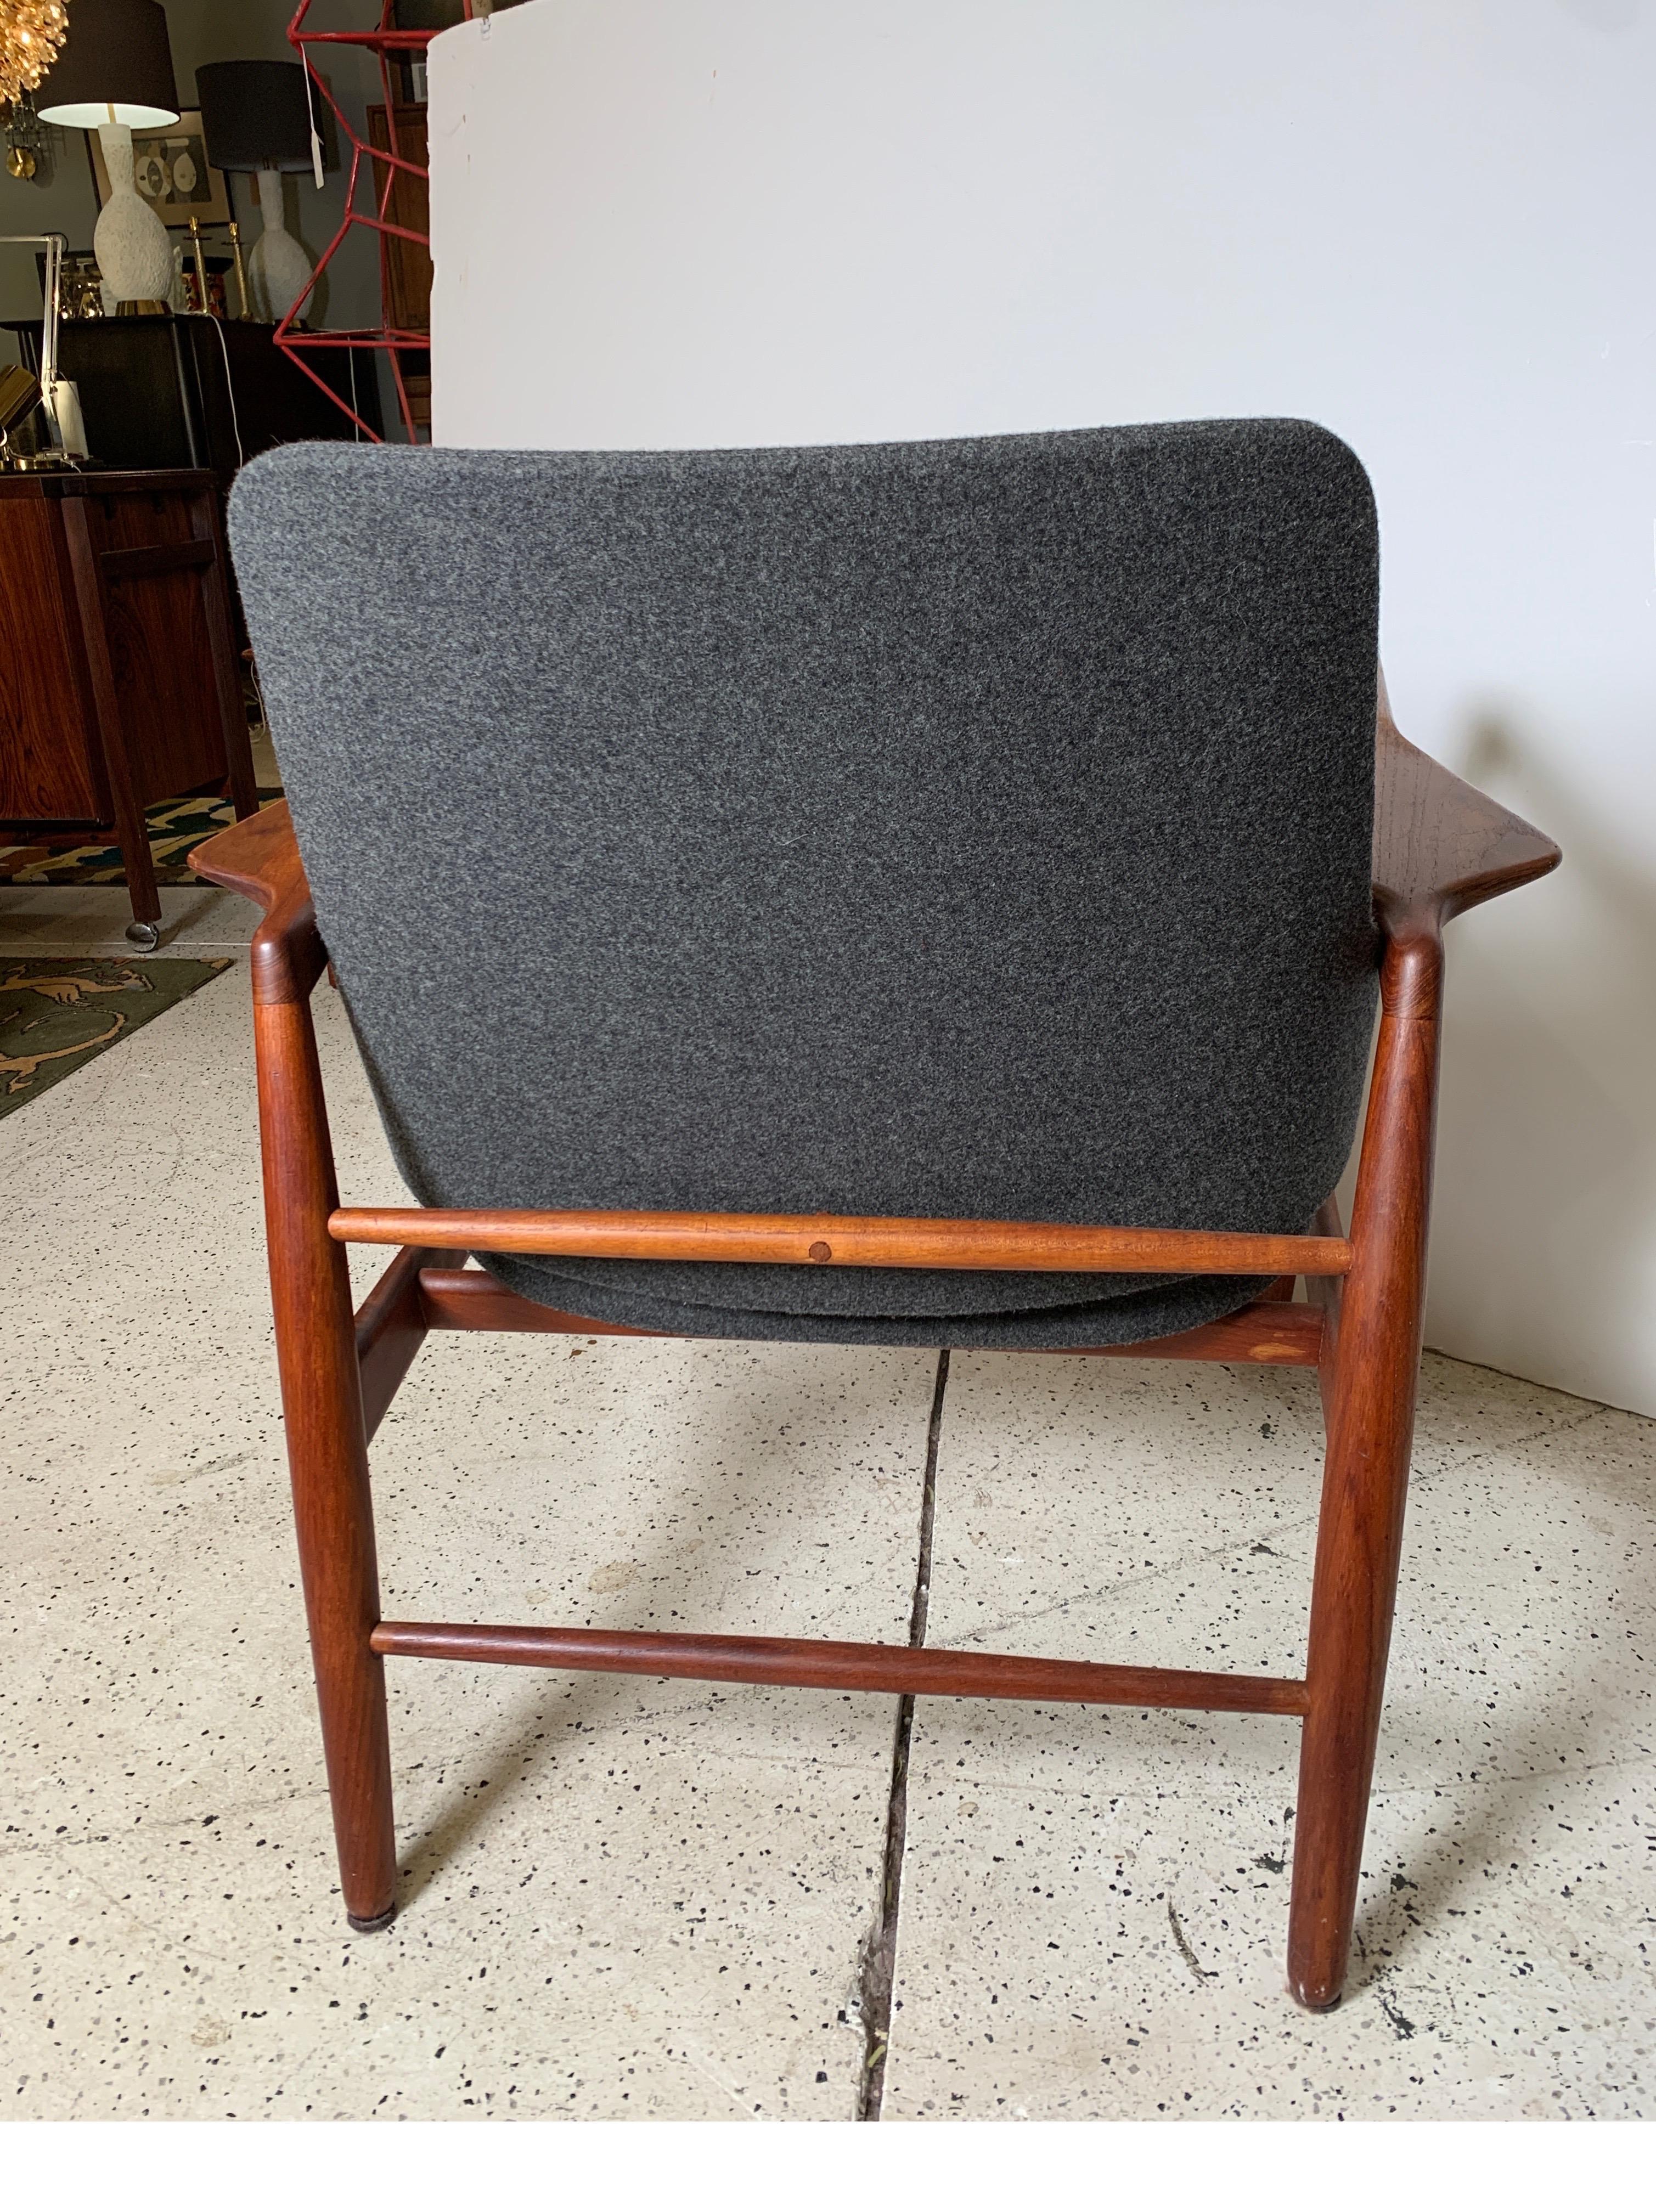 Ib Kofod Larsen Lounge Chair in Teak by Carlo Gahrn for Bovirke, Denmark, 1953 2